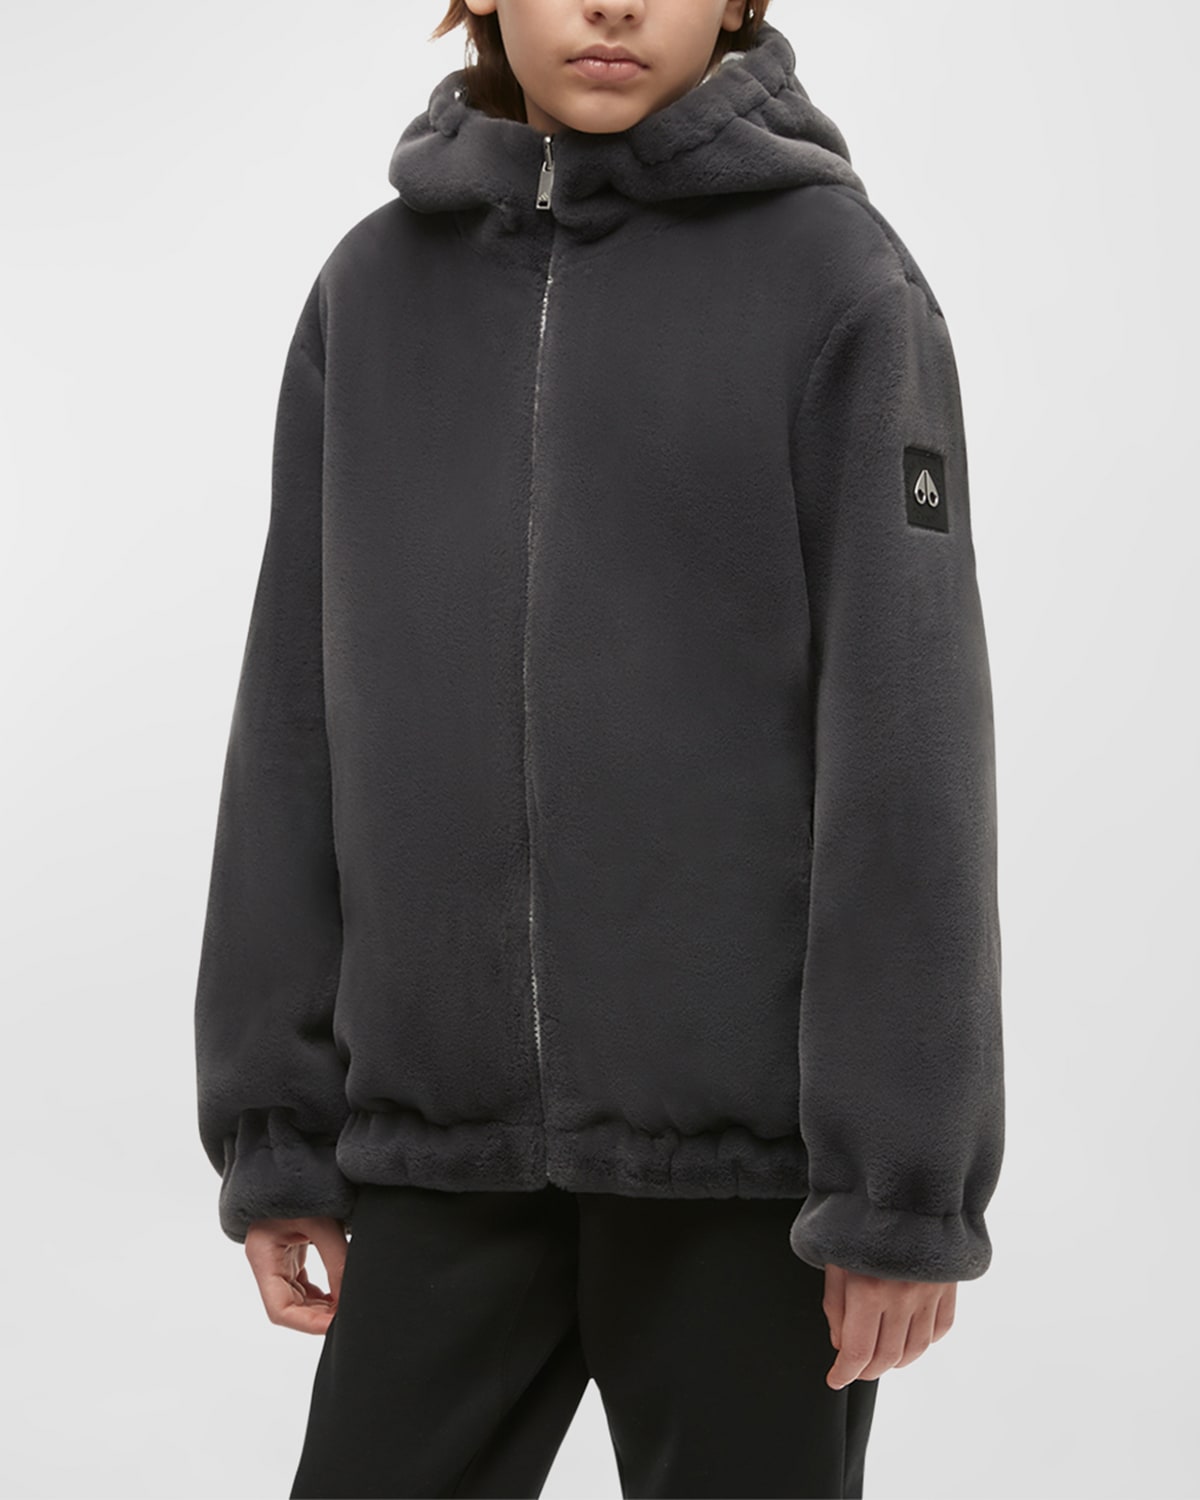 Moose Knuckles Kid's Simcoe Reversible Faux Fur Jacket In Kendall Greysilve